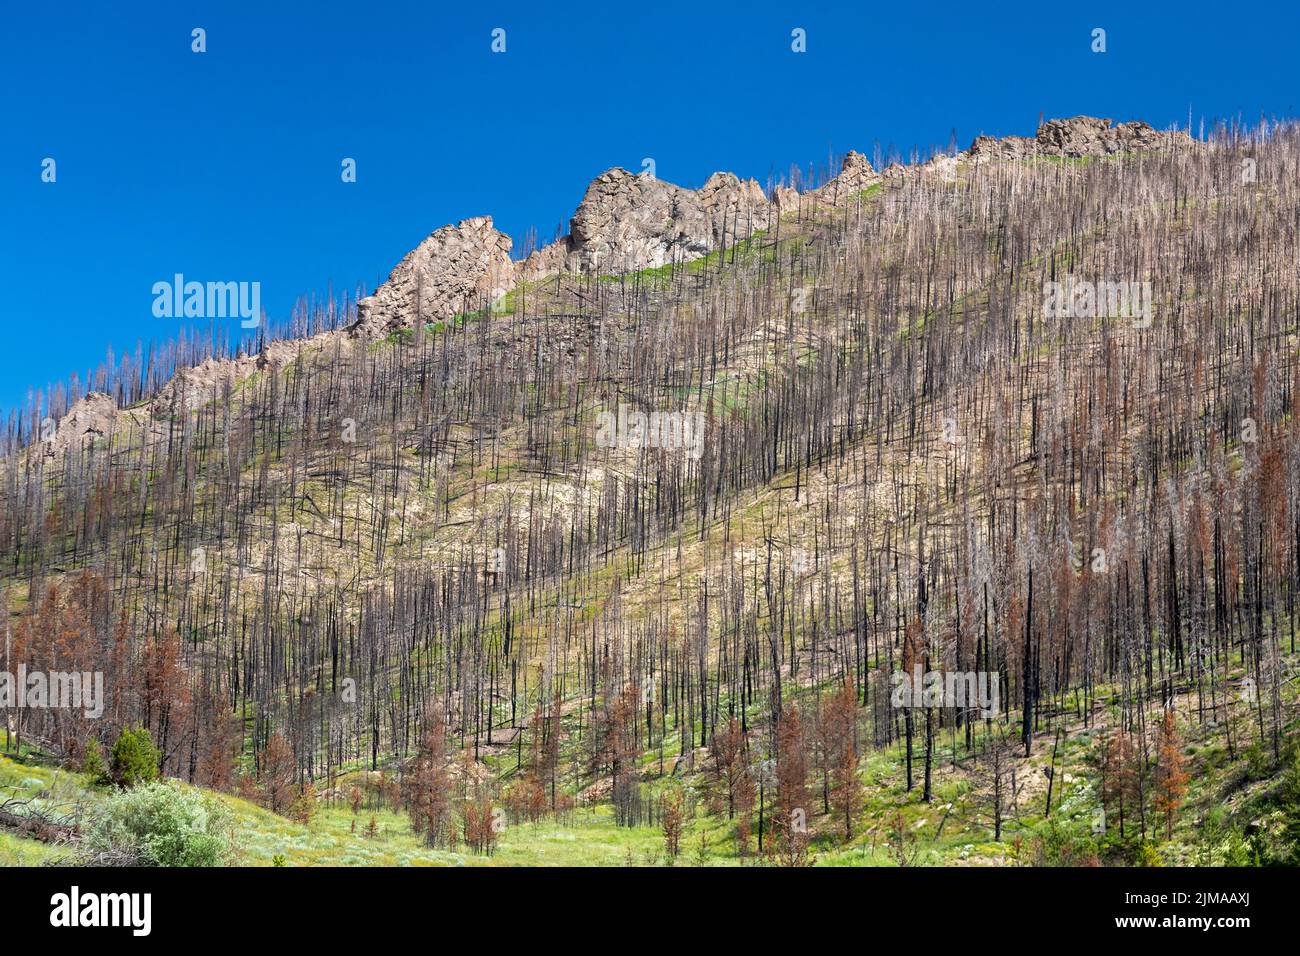 Grand County, Colorado - Las consecuencias del conflicto de incendios en el este. El incendio fue uno de los más grandes en la historia de Colorado, quemando casi 200.000 acr Foto de stock